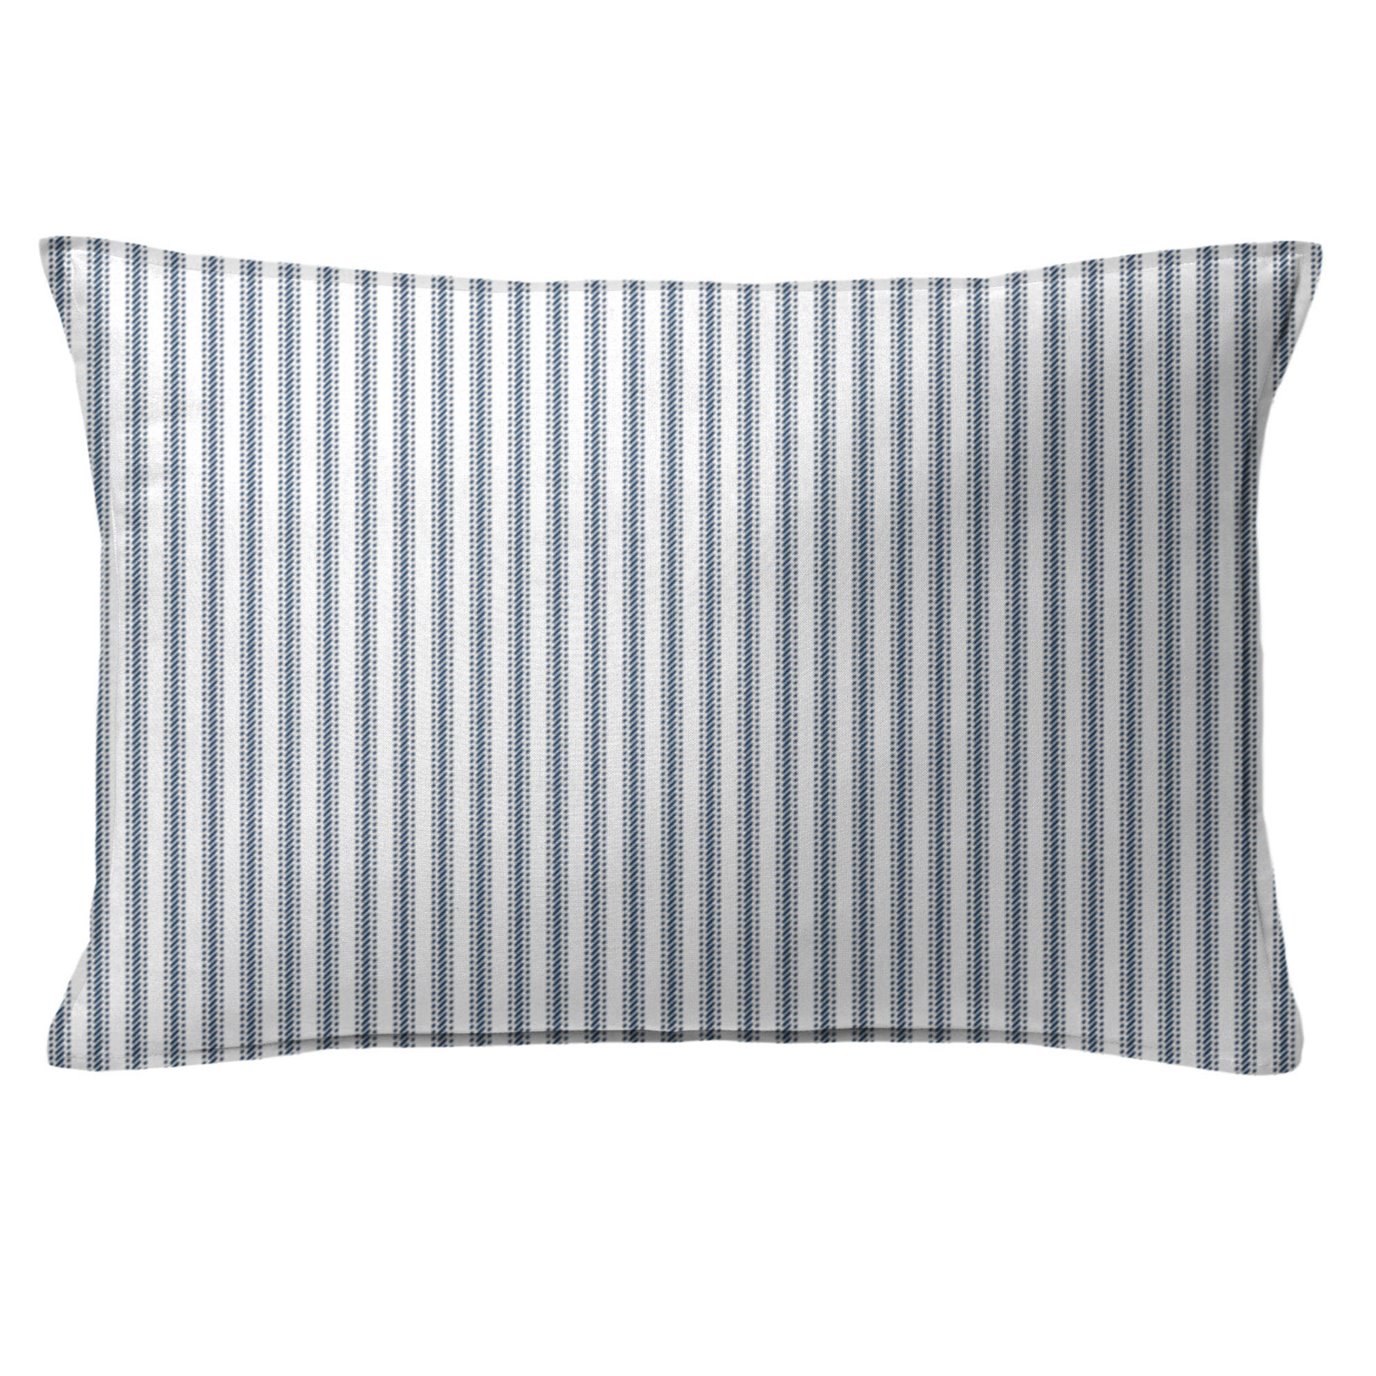 Cruz Ticking Stripes White/Navy Decorative Pillow - Size 14"x20" Rectangle